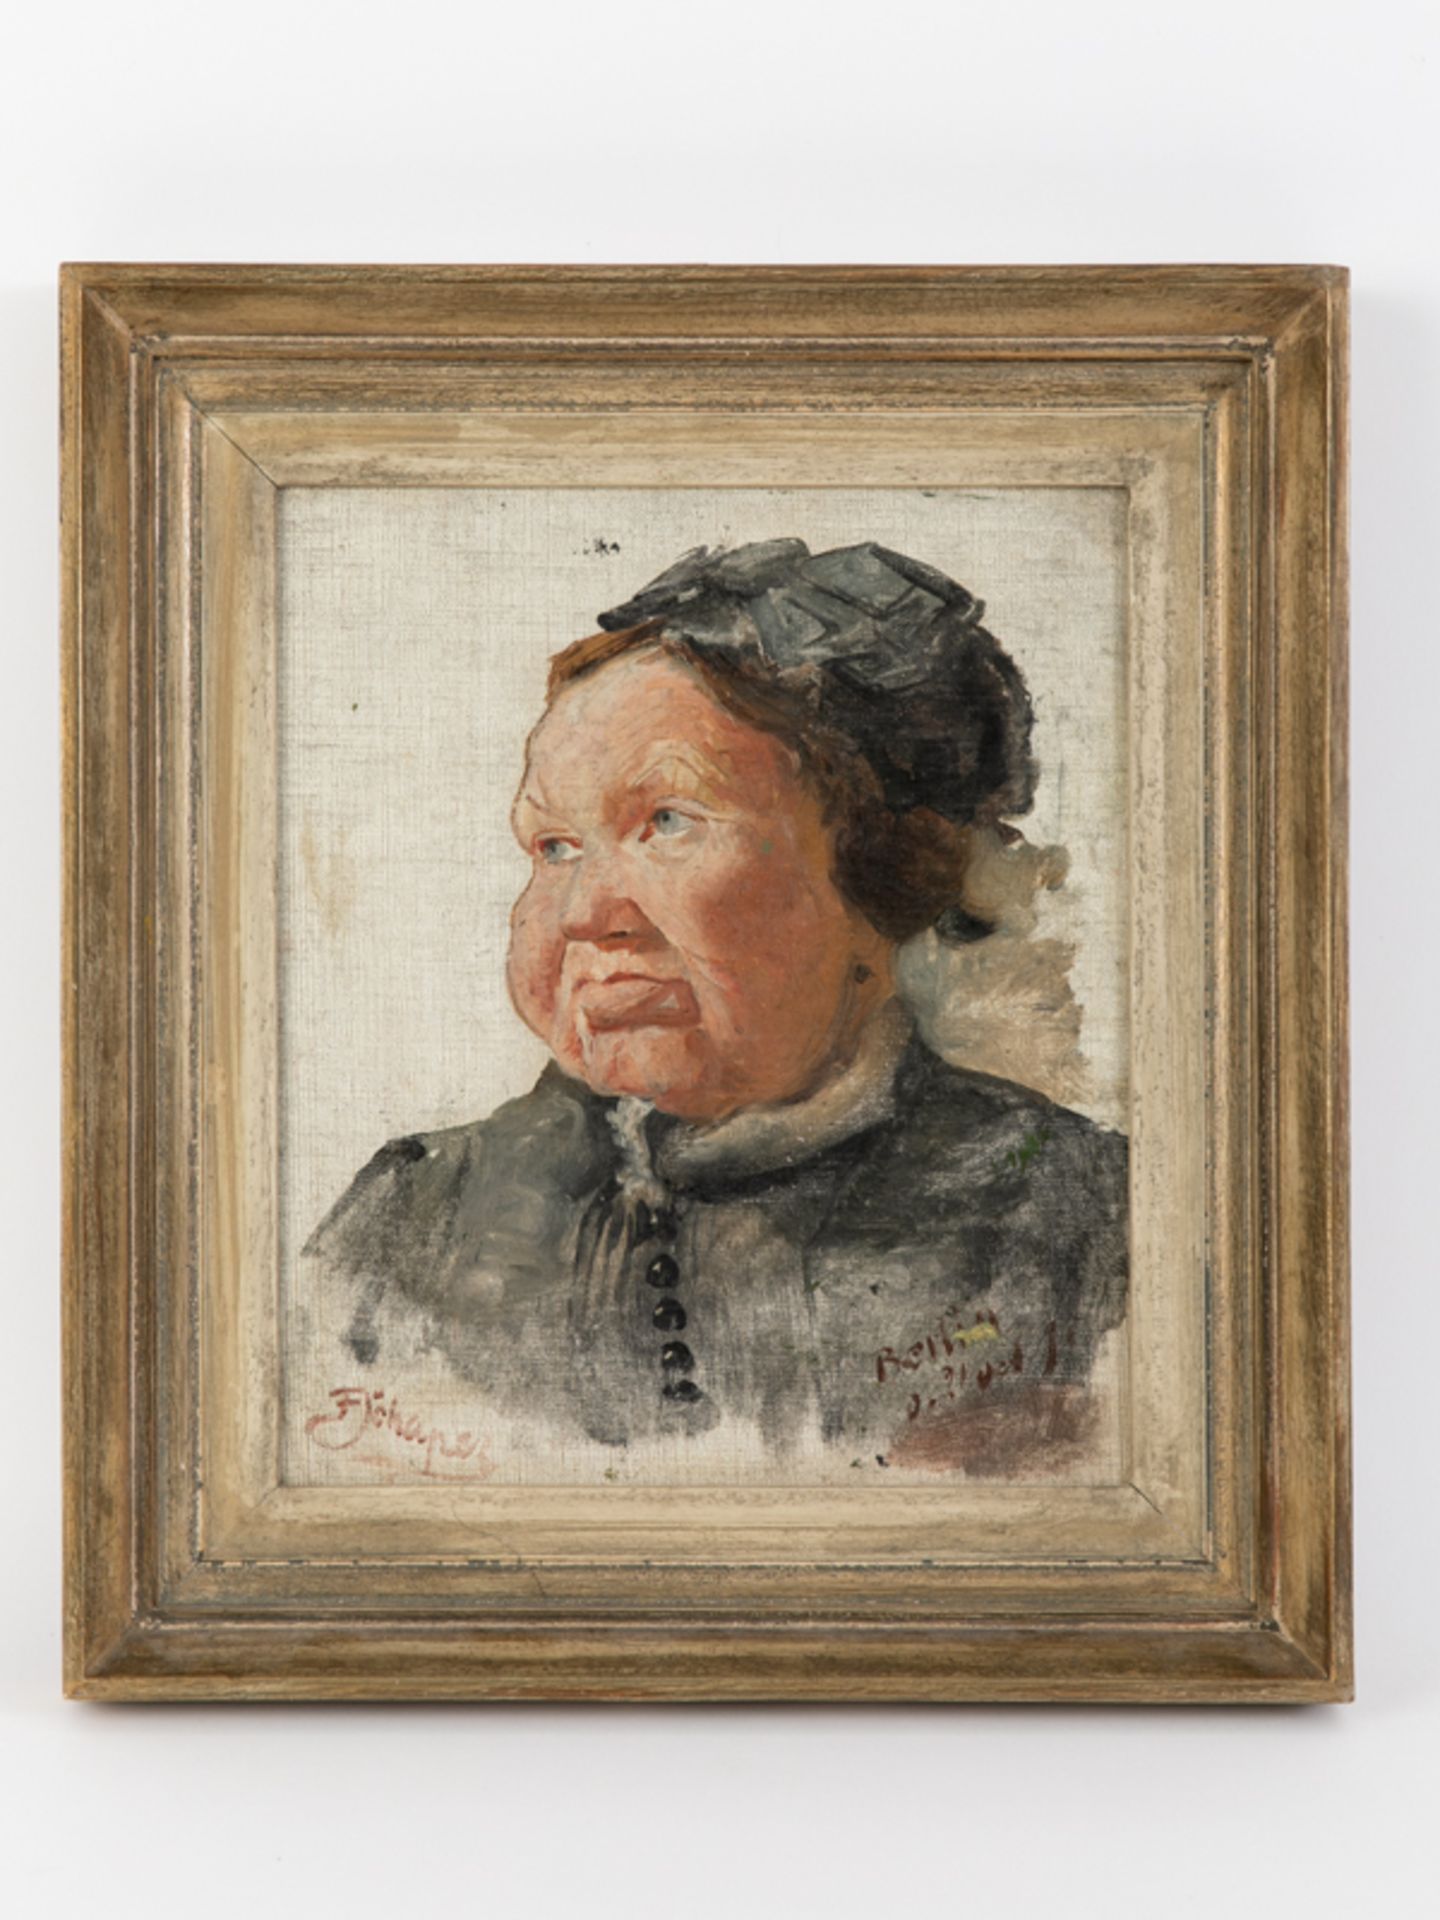 Schaper, Friedrich (1869 - 1956). Öl auf Leinwand (doubliert auf Holz), "Portraitstudie einer